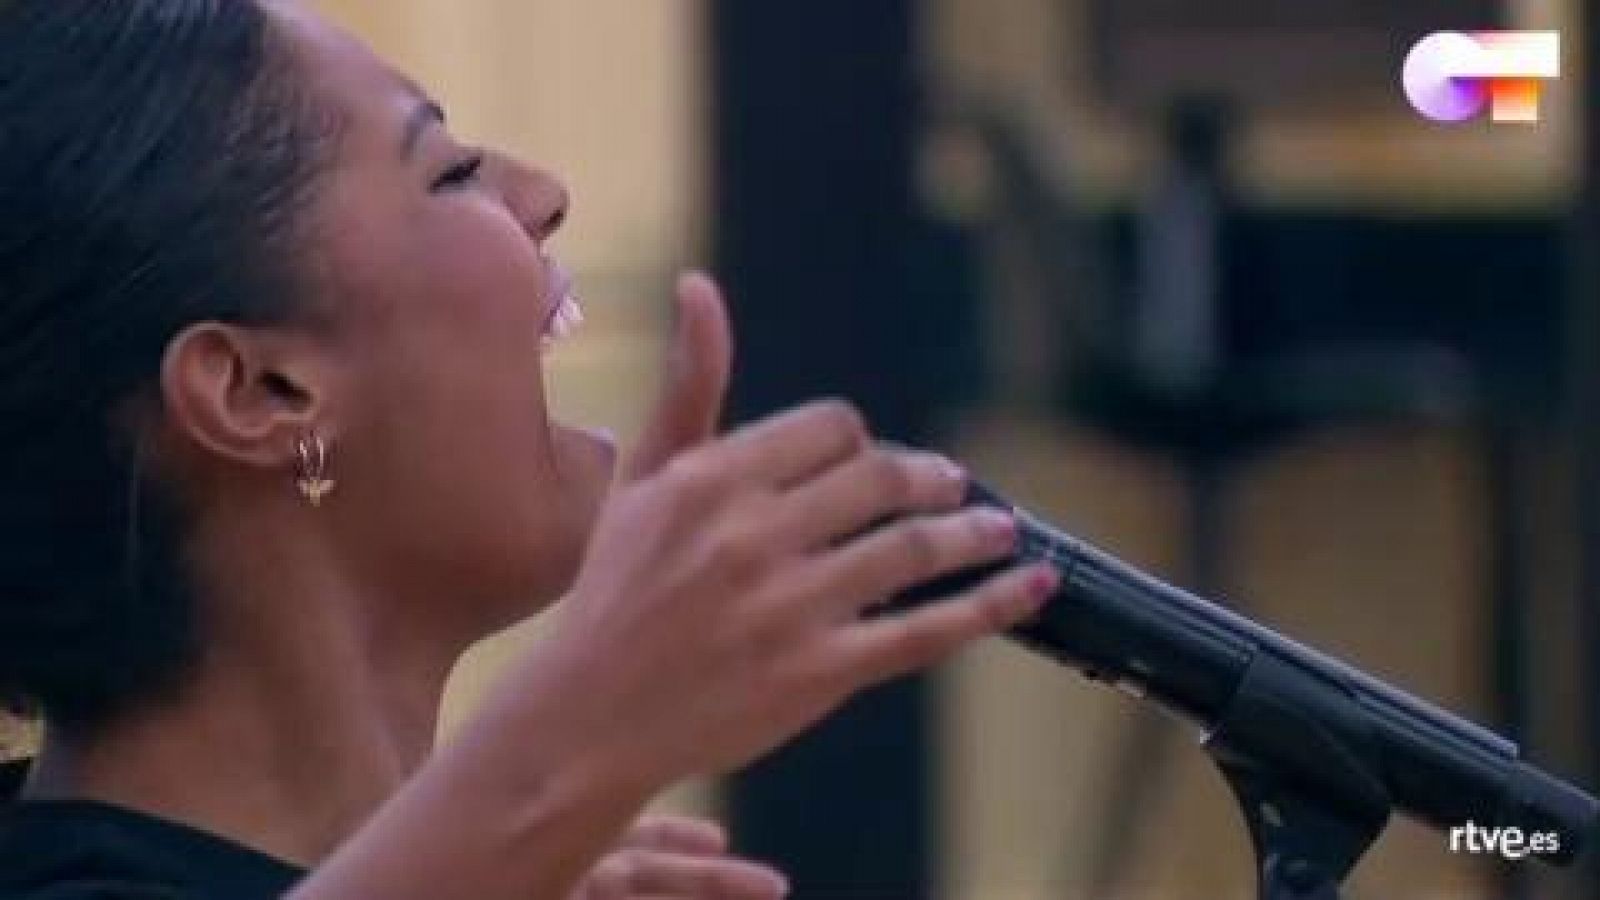 Nia canta "Halo", de Beyoncé, en el primer pase de micros de la Gala 11 de Operación Triunfo 2020